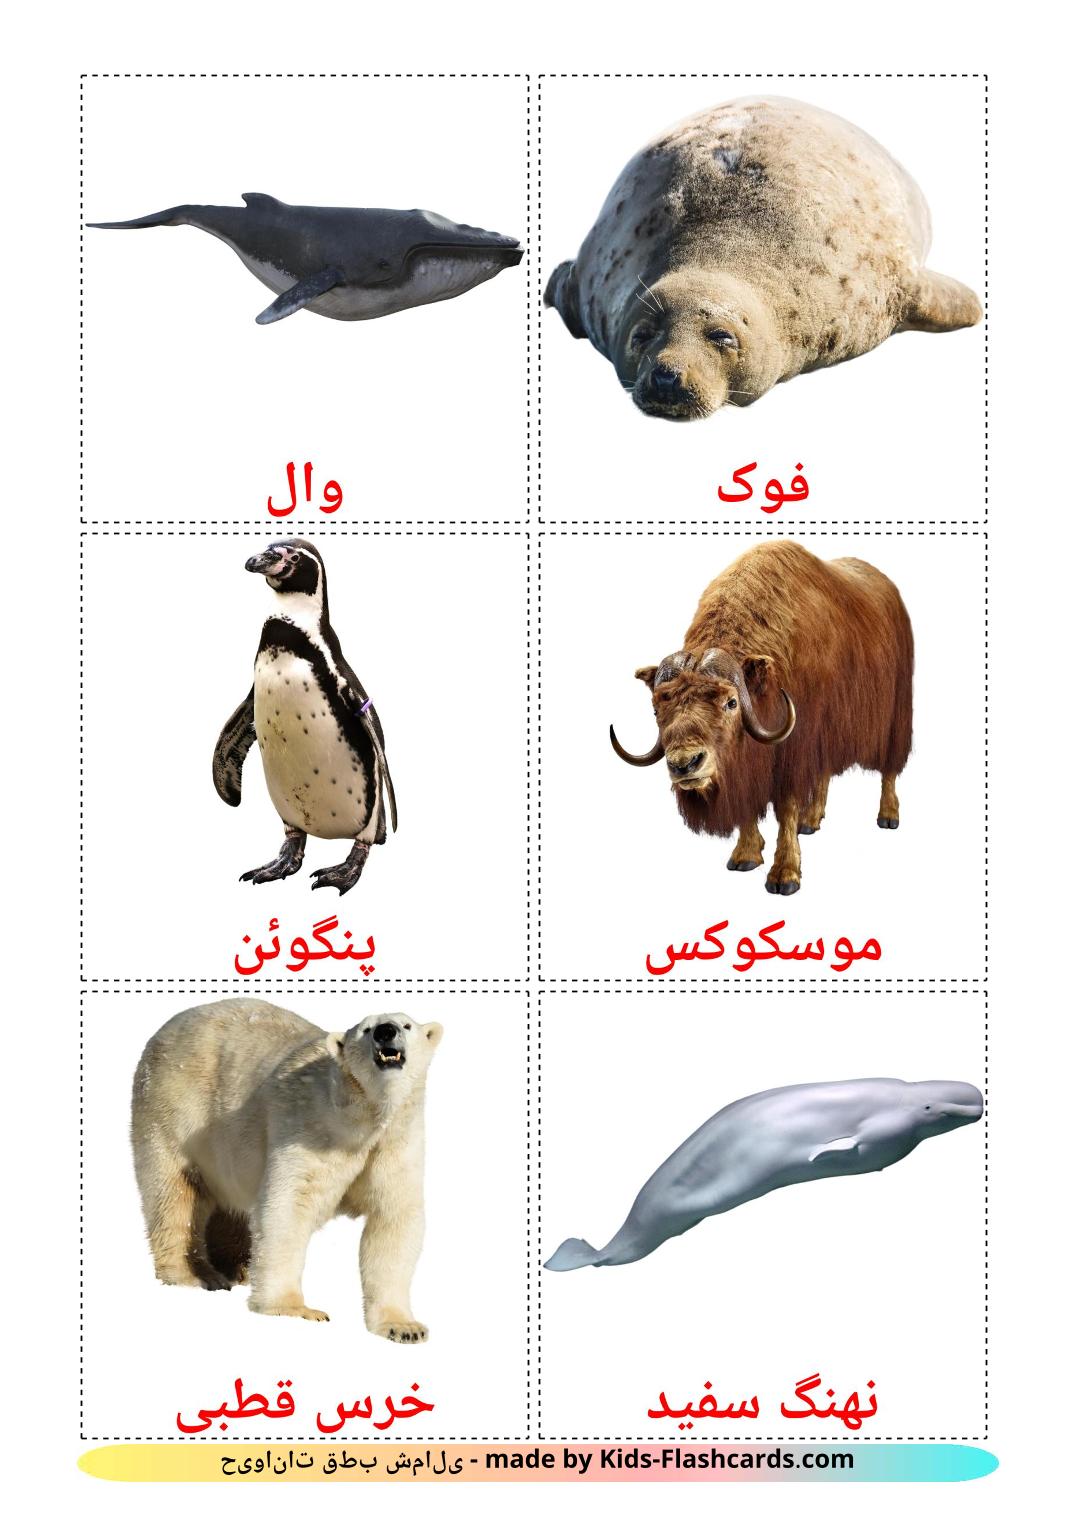 Tiere in der arktis - 14 kostenlose, druckbare Persisch Flashcards 